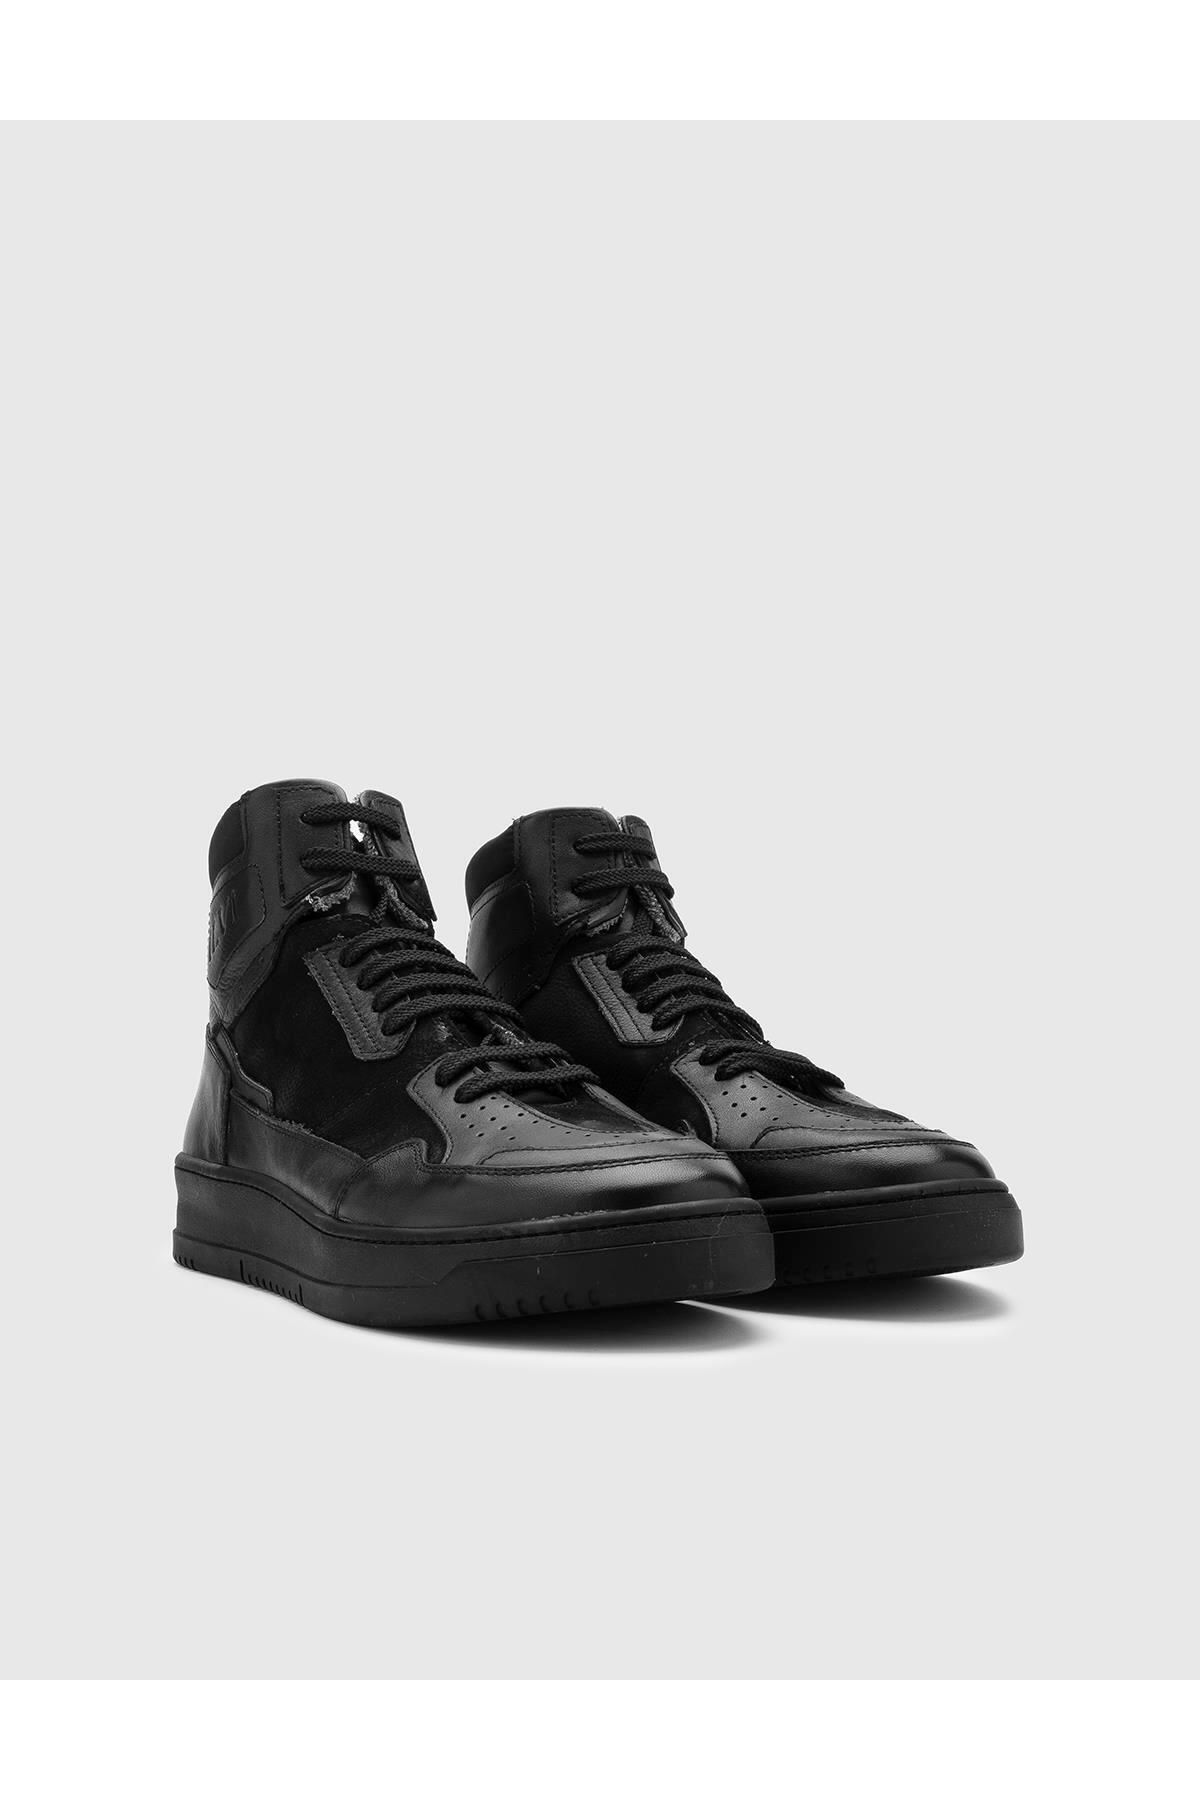 İlvi Colarine Мужские черные ботинки из натуральной кожи Colarine-5160.1001